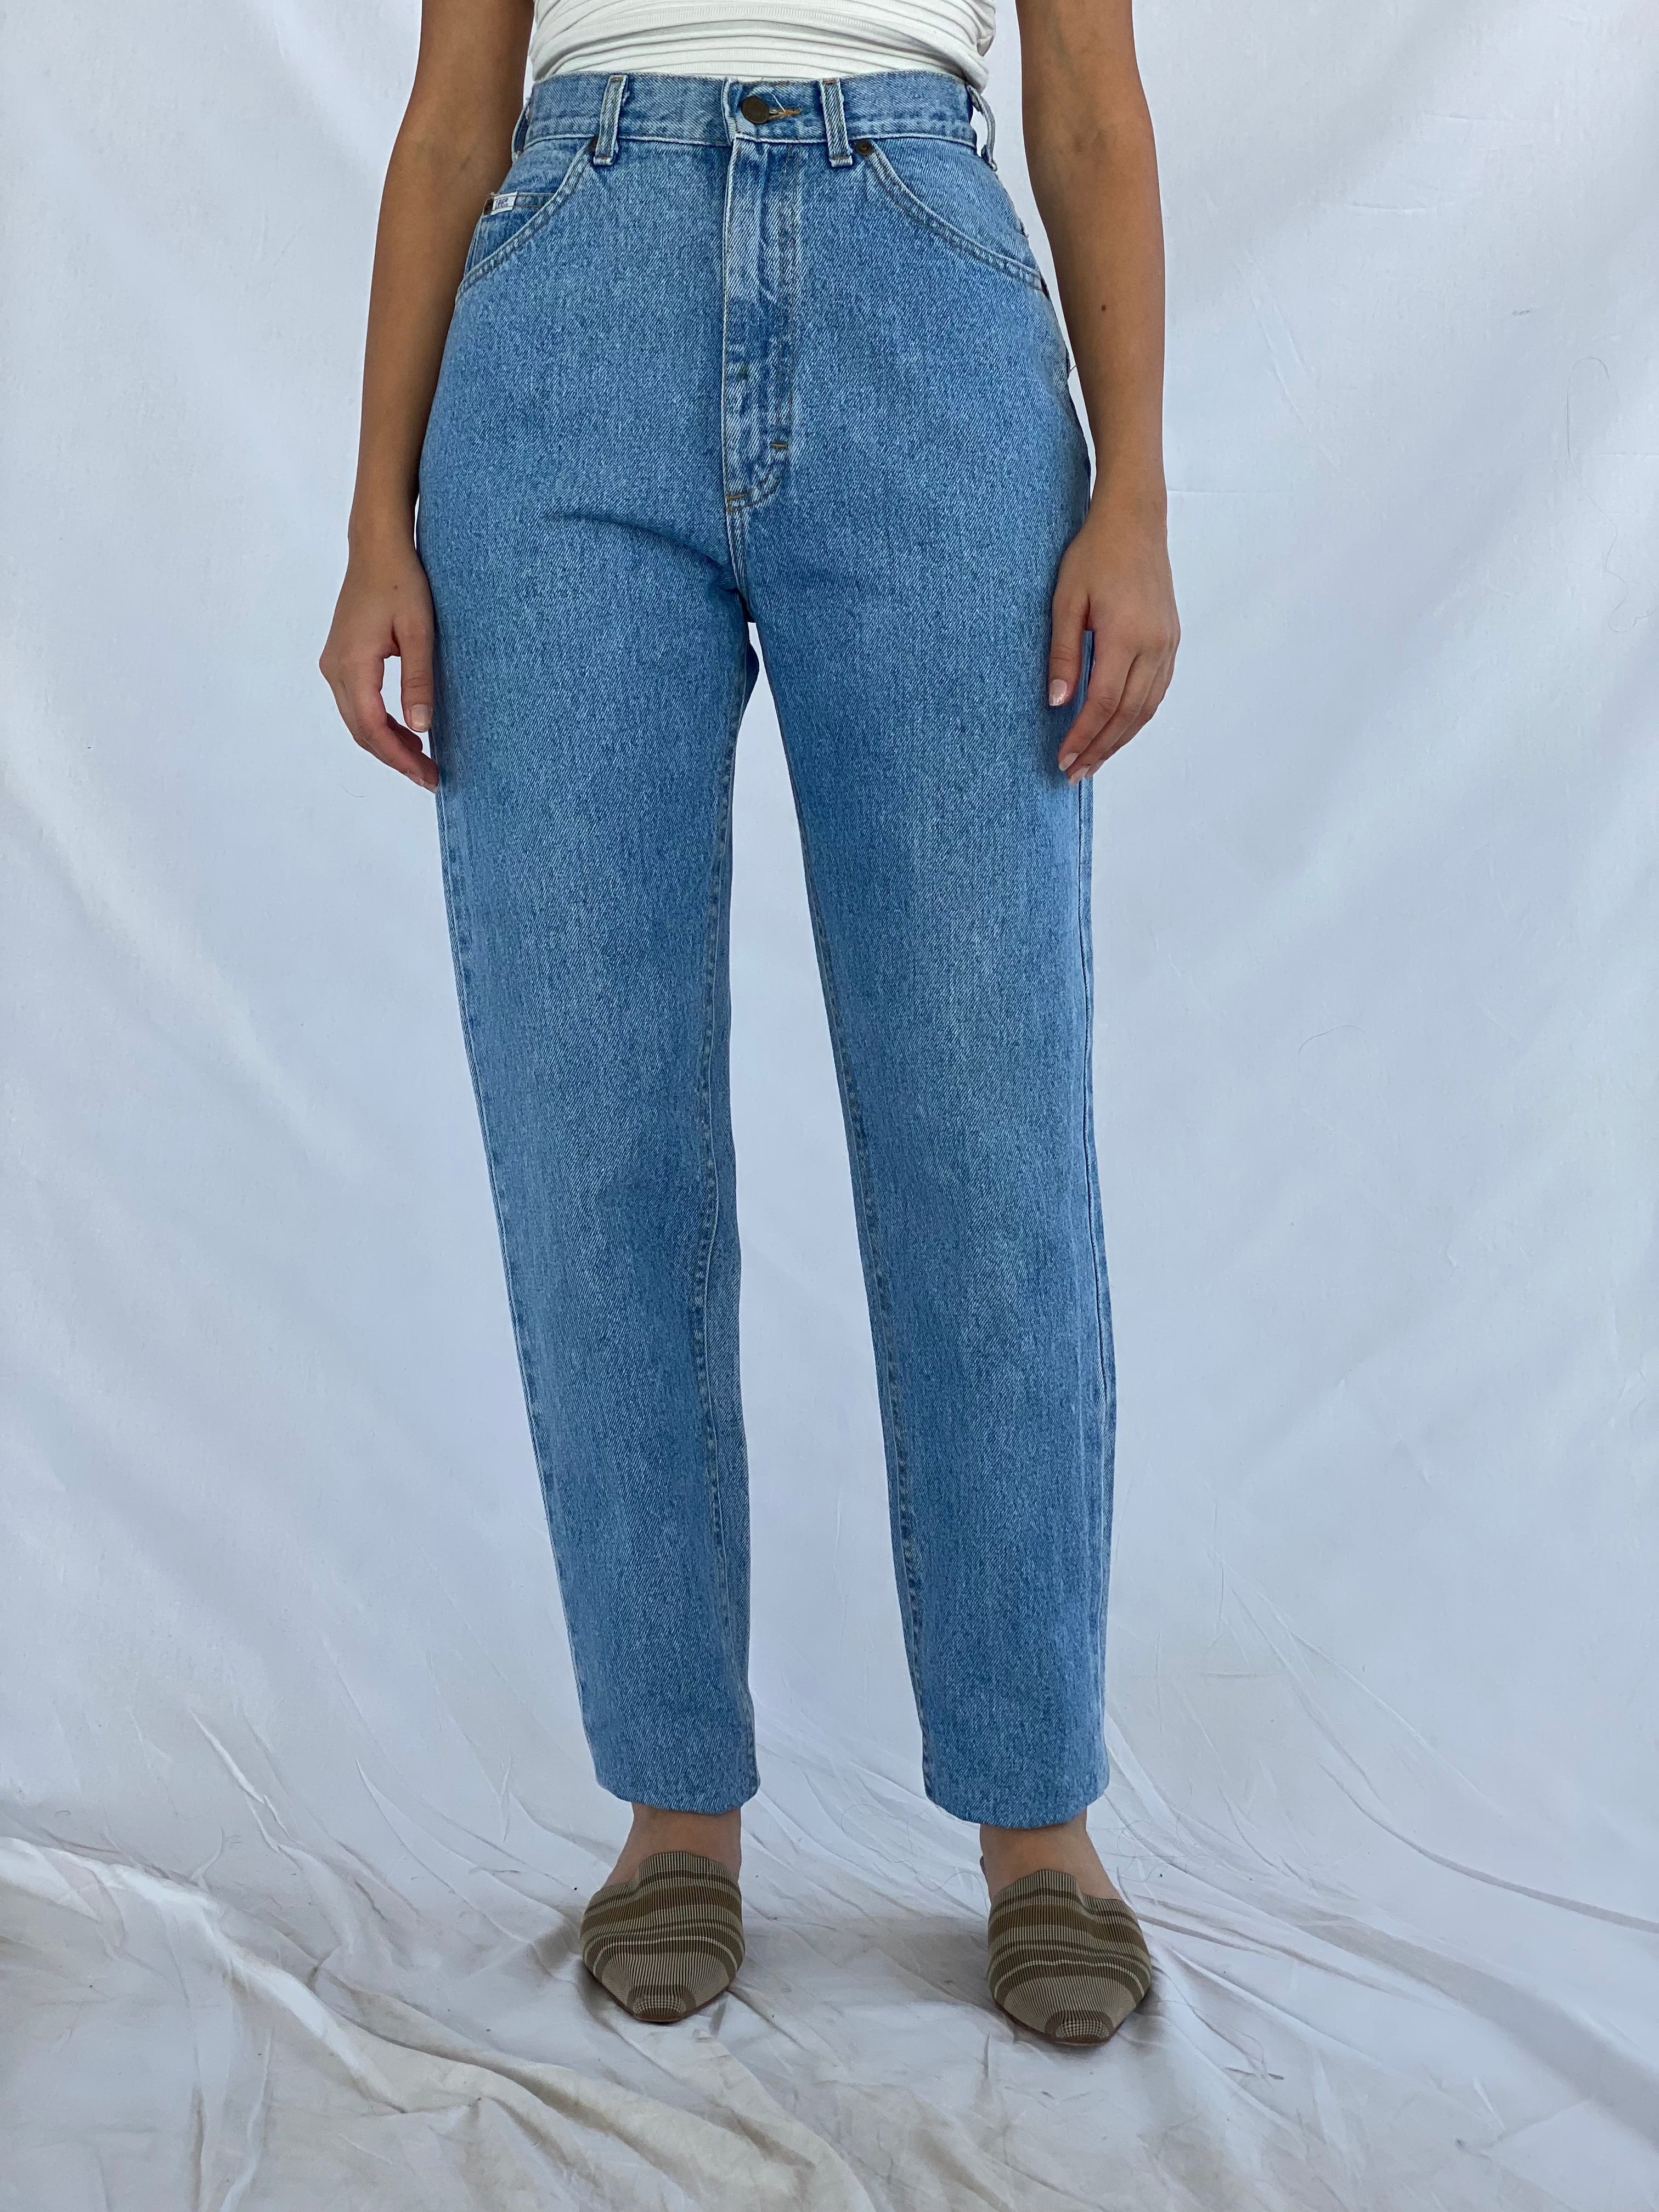 Vintage Lee Jeans - Balagan Vintage jeans, lee jeans, straight cut jeans, straightcut, vintage, vintage lee jeans